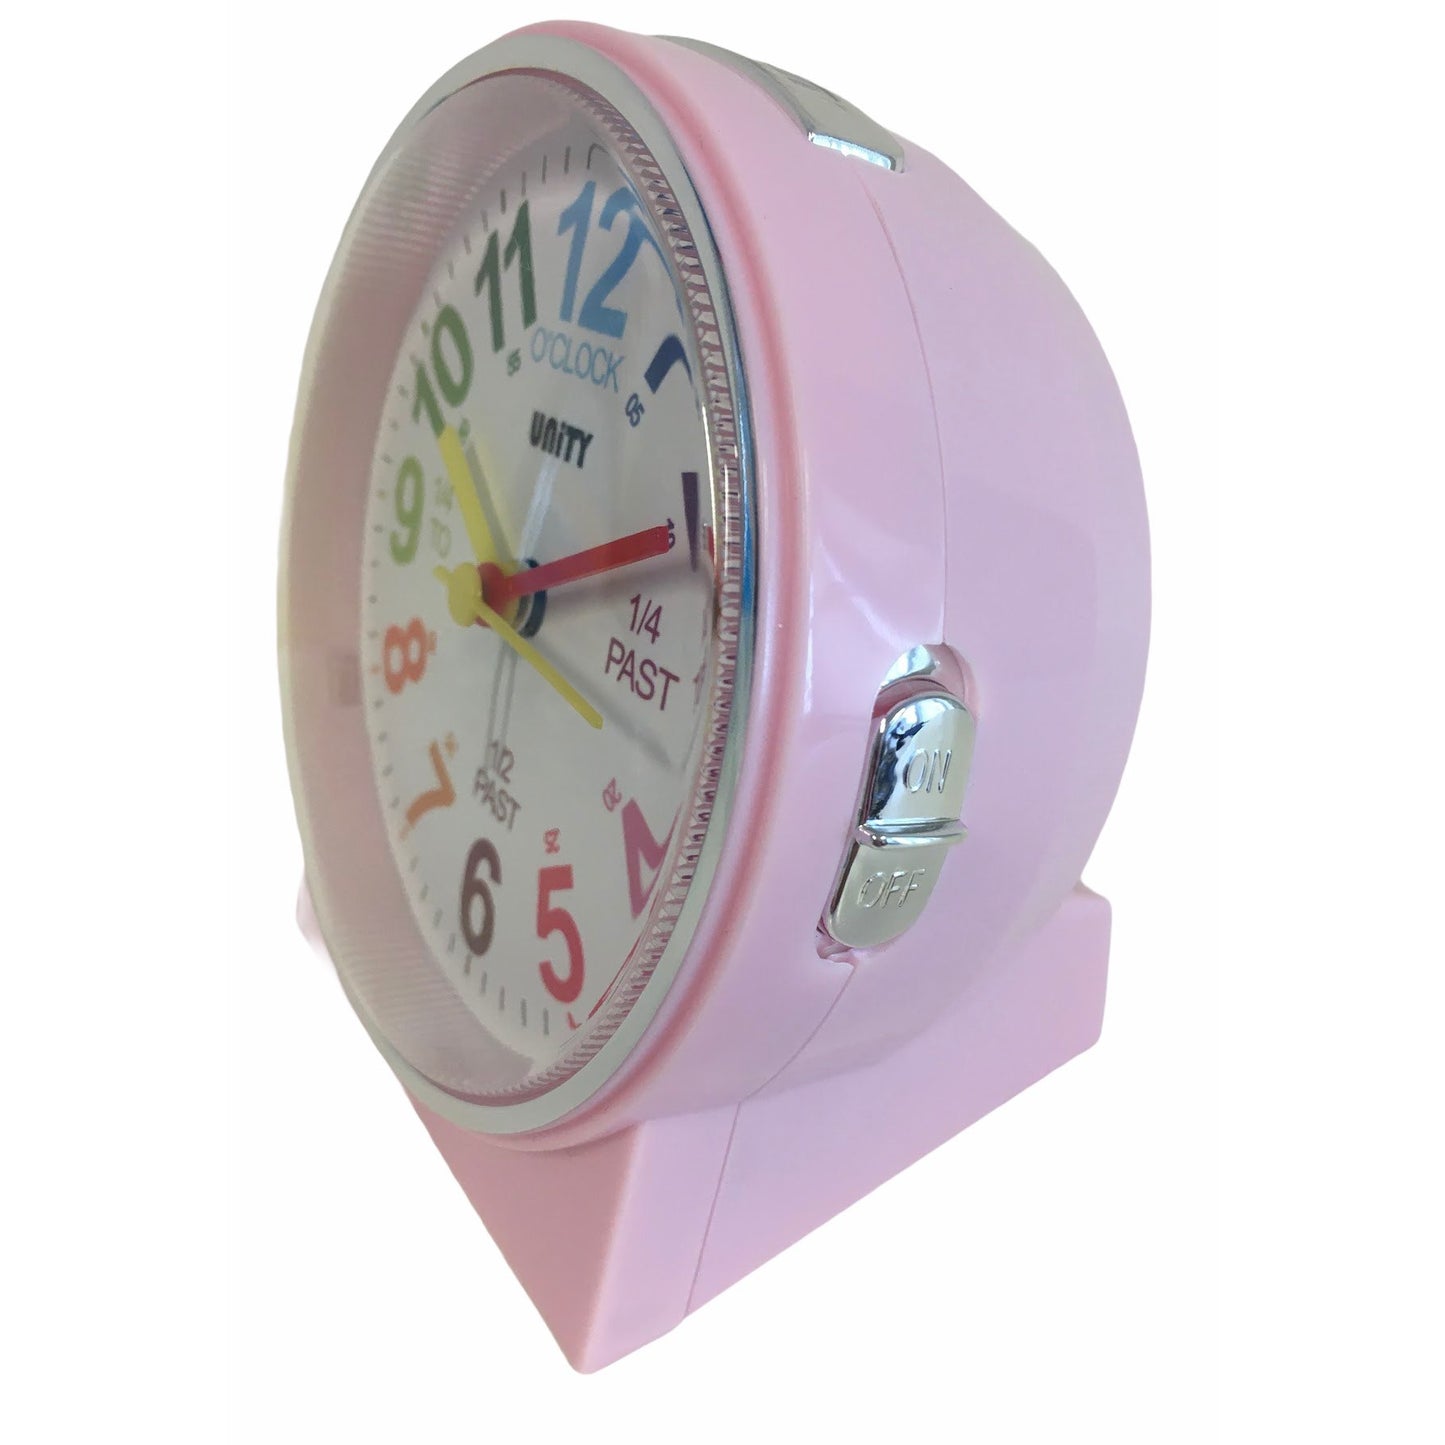 Children's Alarm Clock in Pink